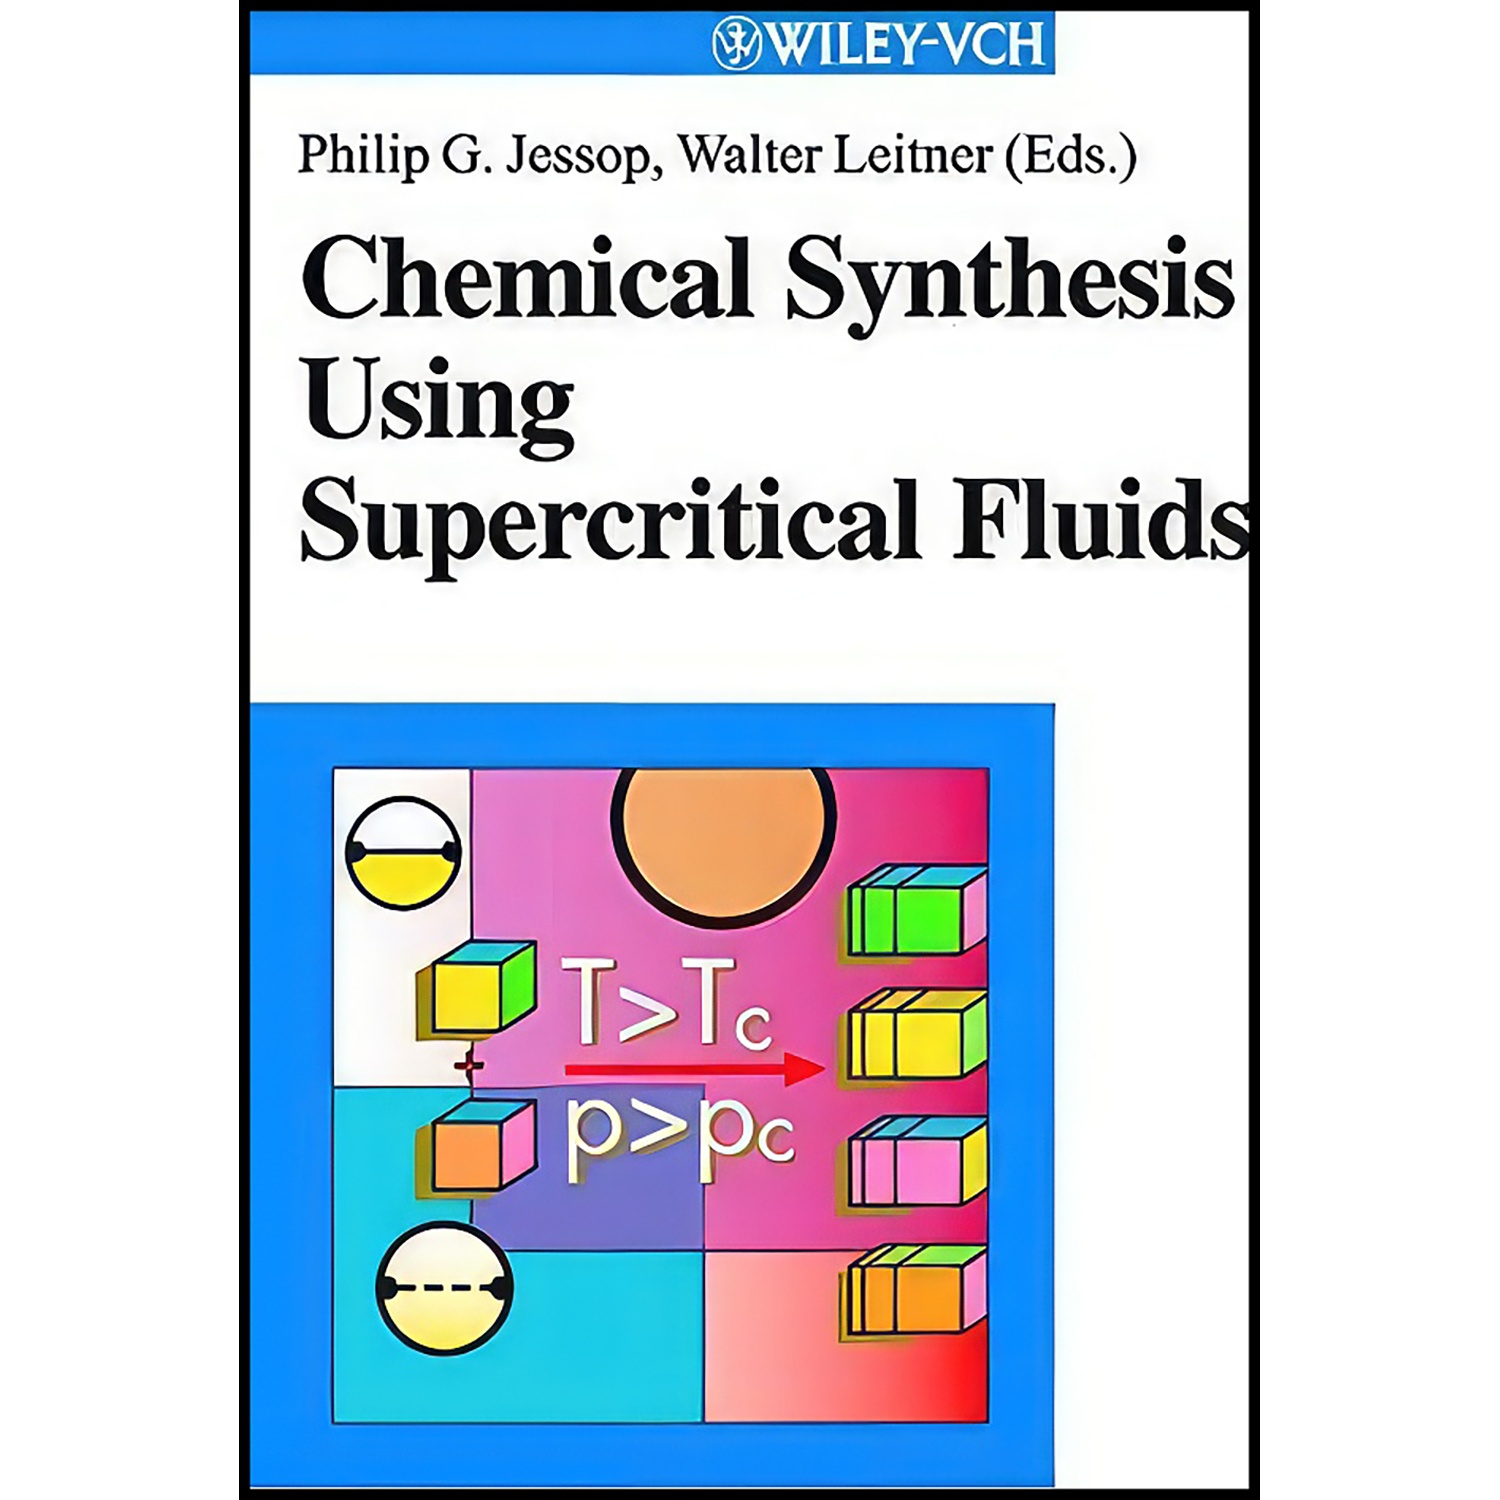 کتاب Chemical Synthesis Using Supercritical Fluids اثر Philip G. Jessop and Walter Leitner انتشارات Wiley-VCH